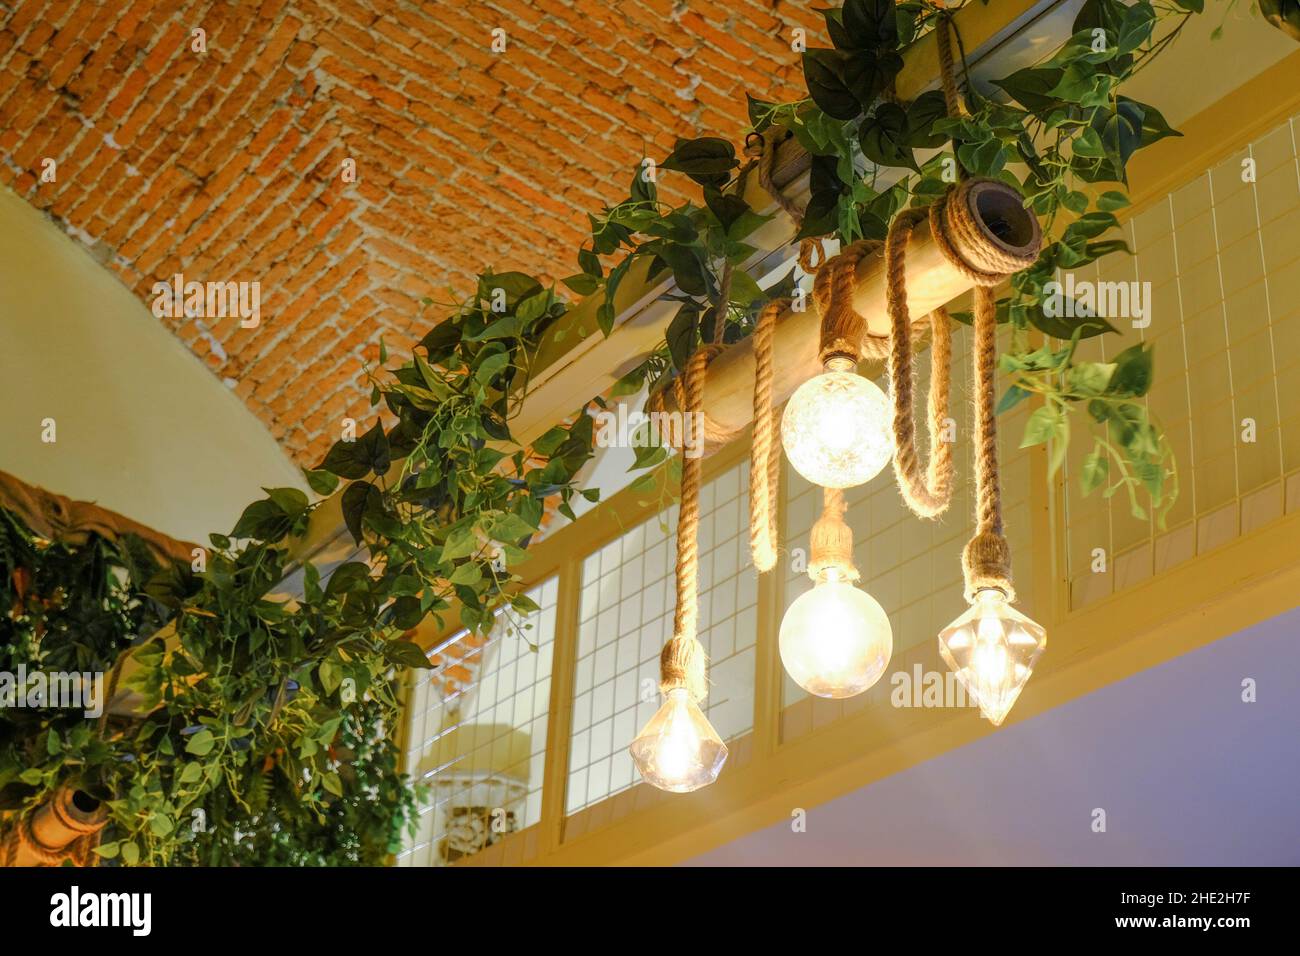 Der dekorative Kronleuchter hängt an Seilen über grünen Pflanzen, Ziegelwände an der Decke. Innenarchitektur. Leichtes Design Stockfoto